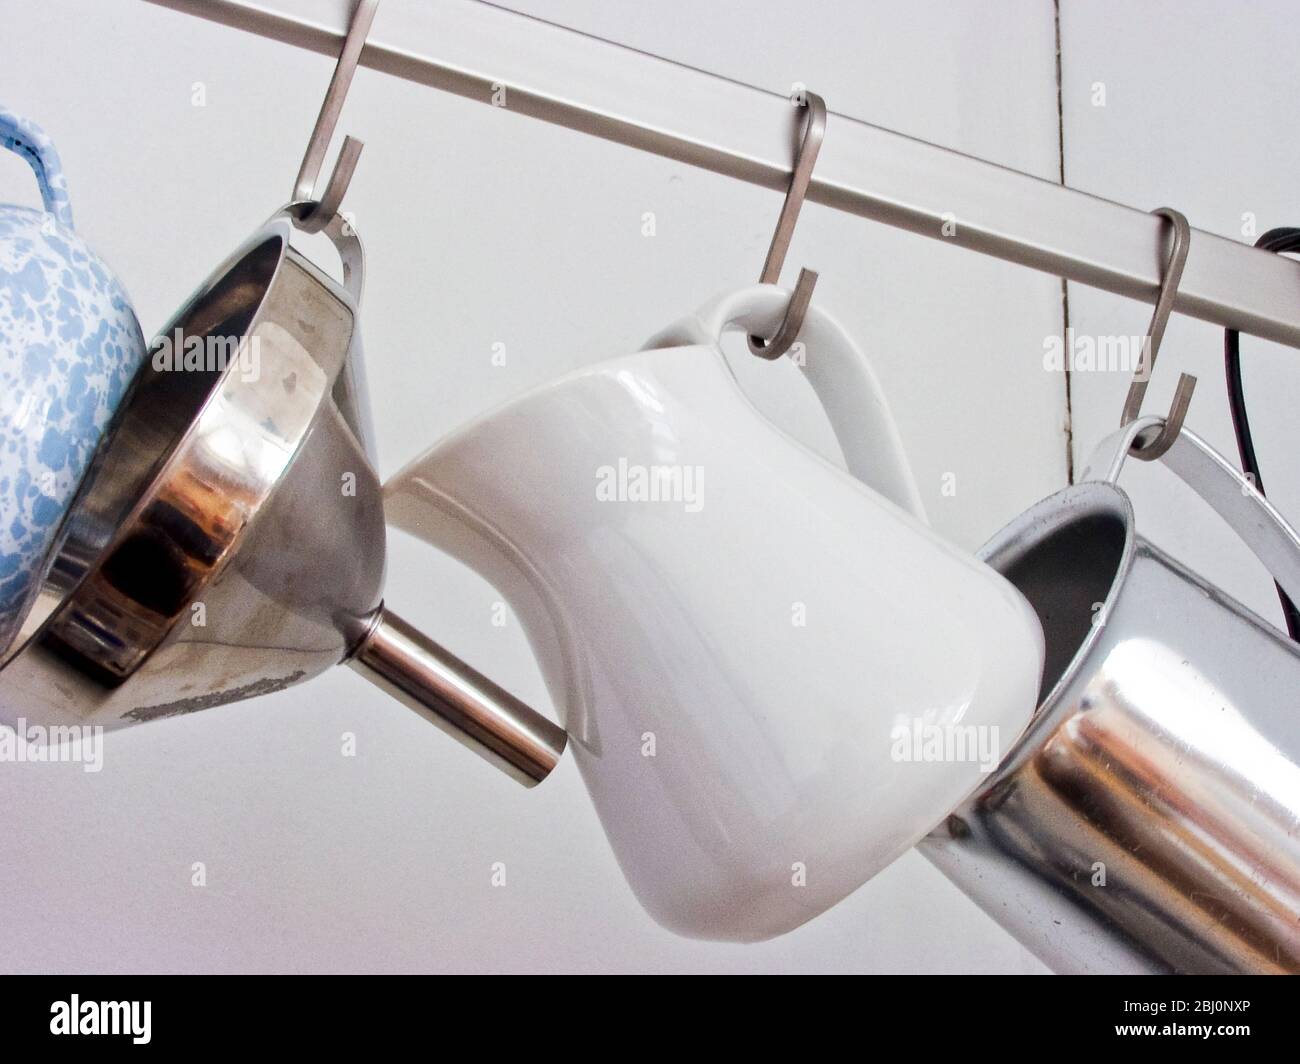 Varie brocche da cucina e un imbuto appeso su rotaia metallica - Foto Stock